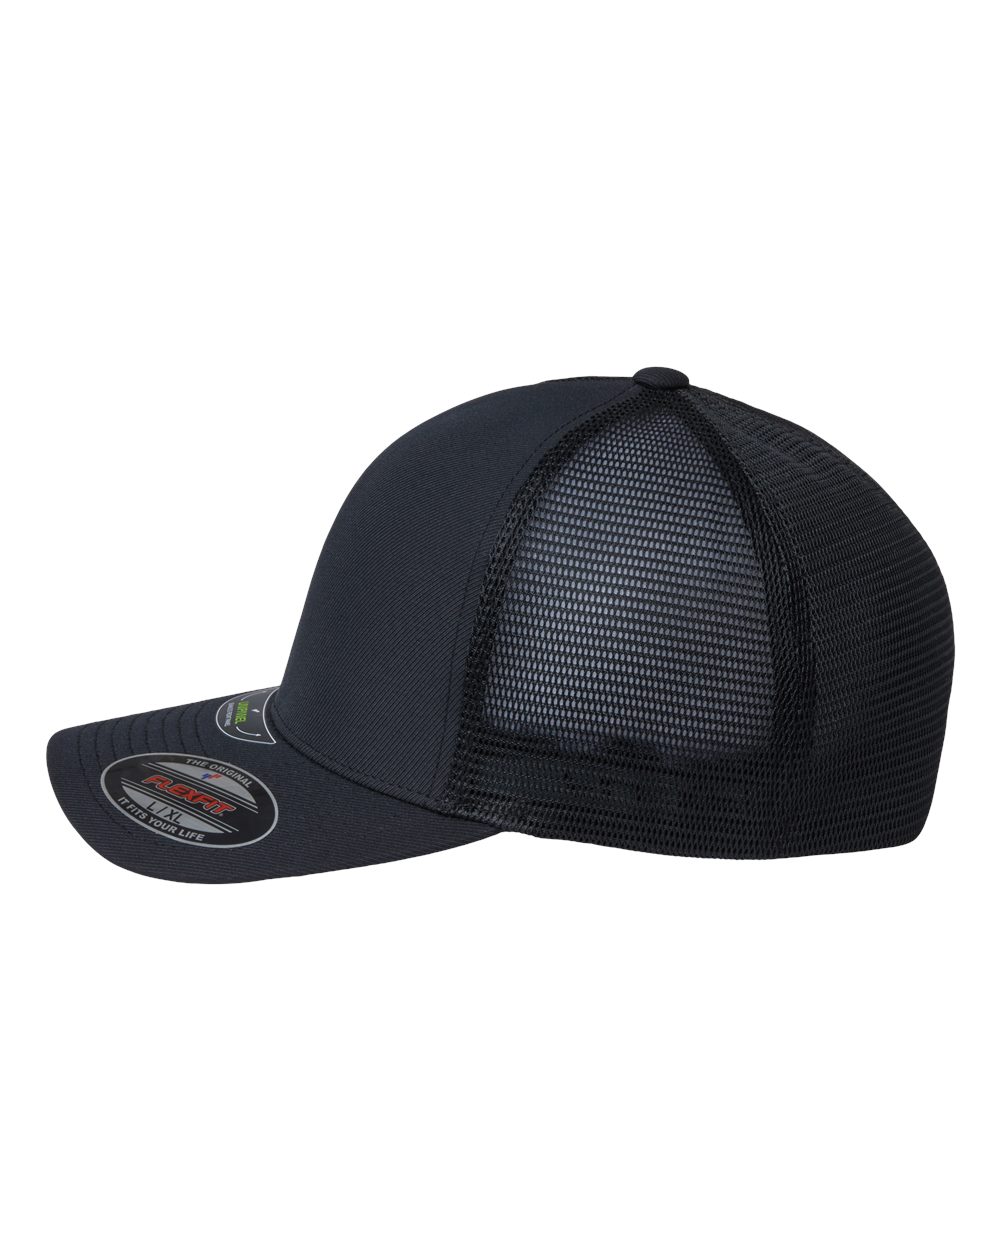 Unipanel™ Trucker Cap - Flexfit | Clothing Shop 5511UP Online